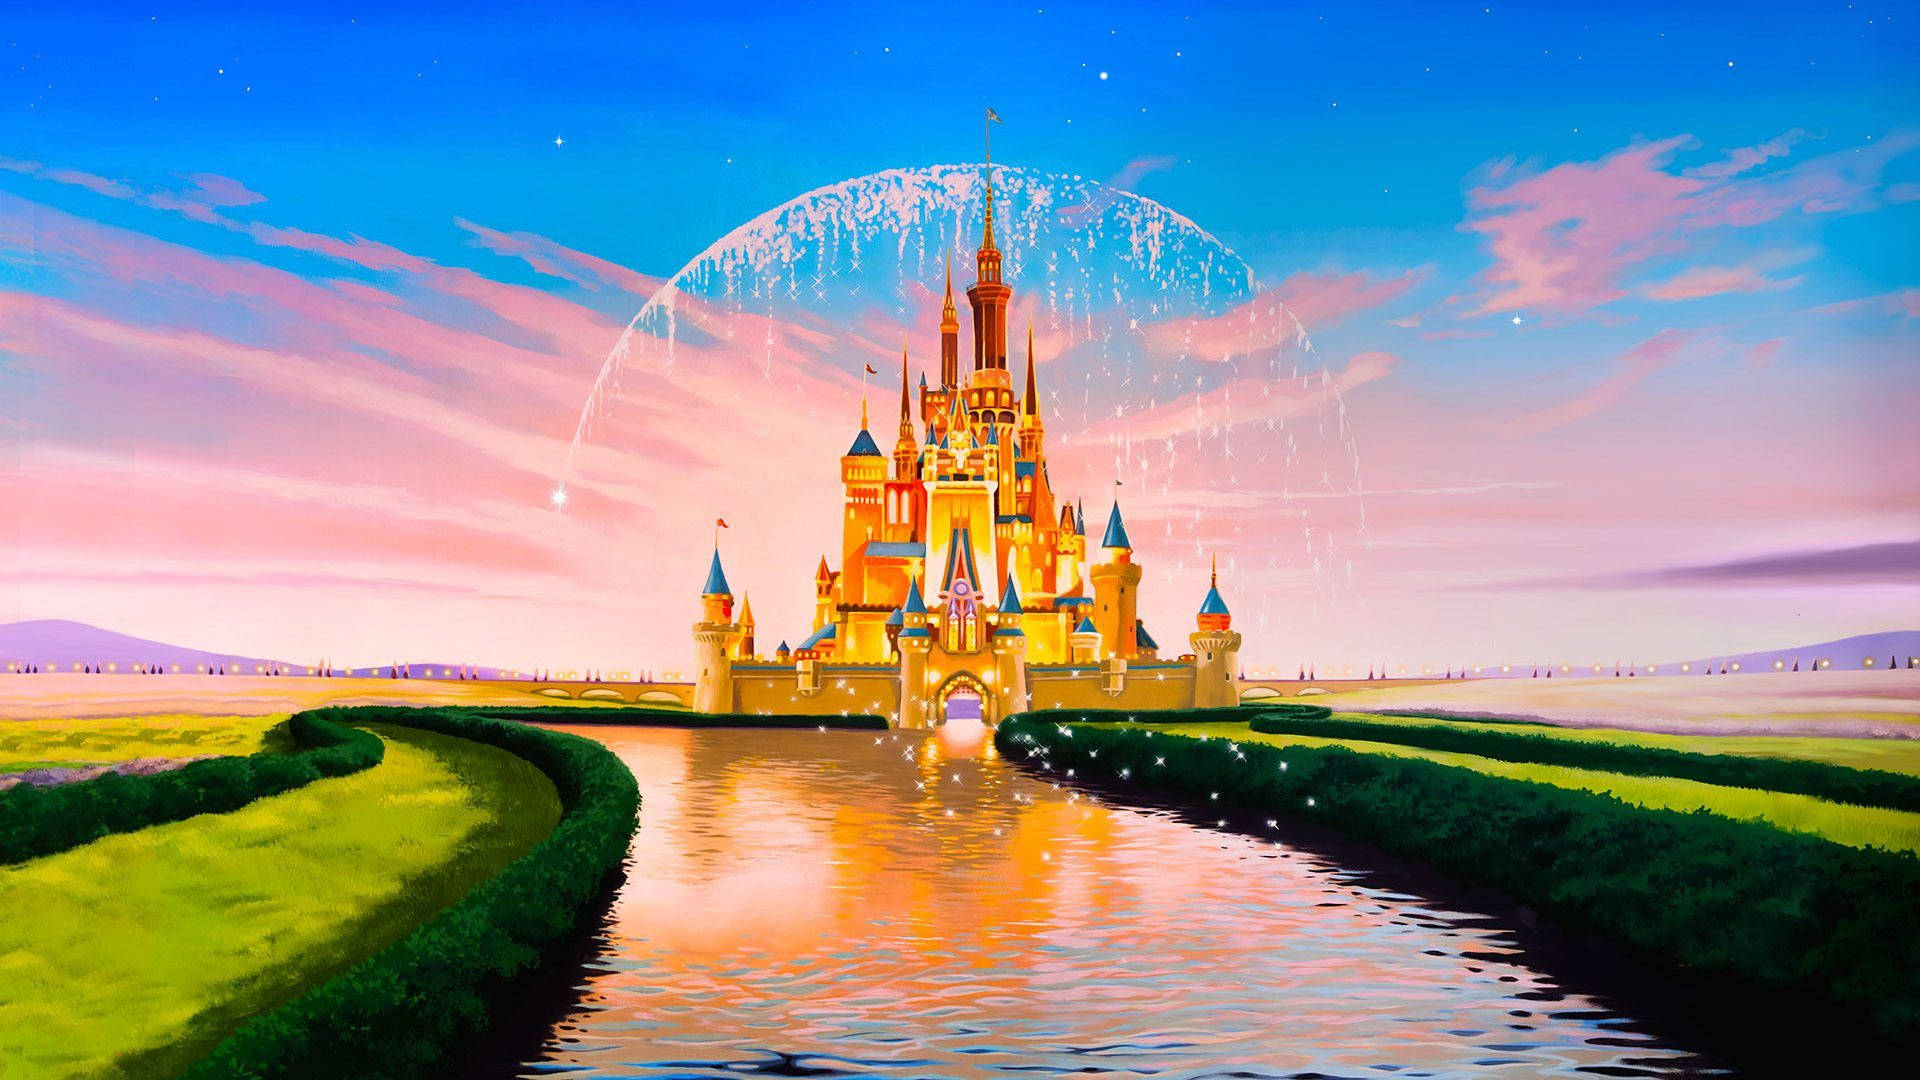 Colorful Disney Castle Laptop Background